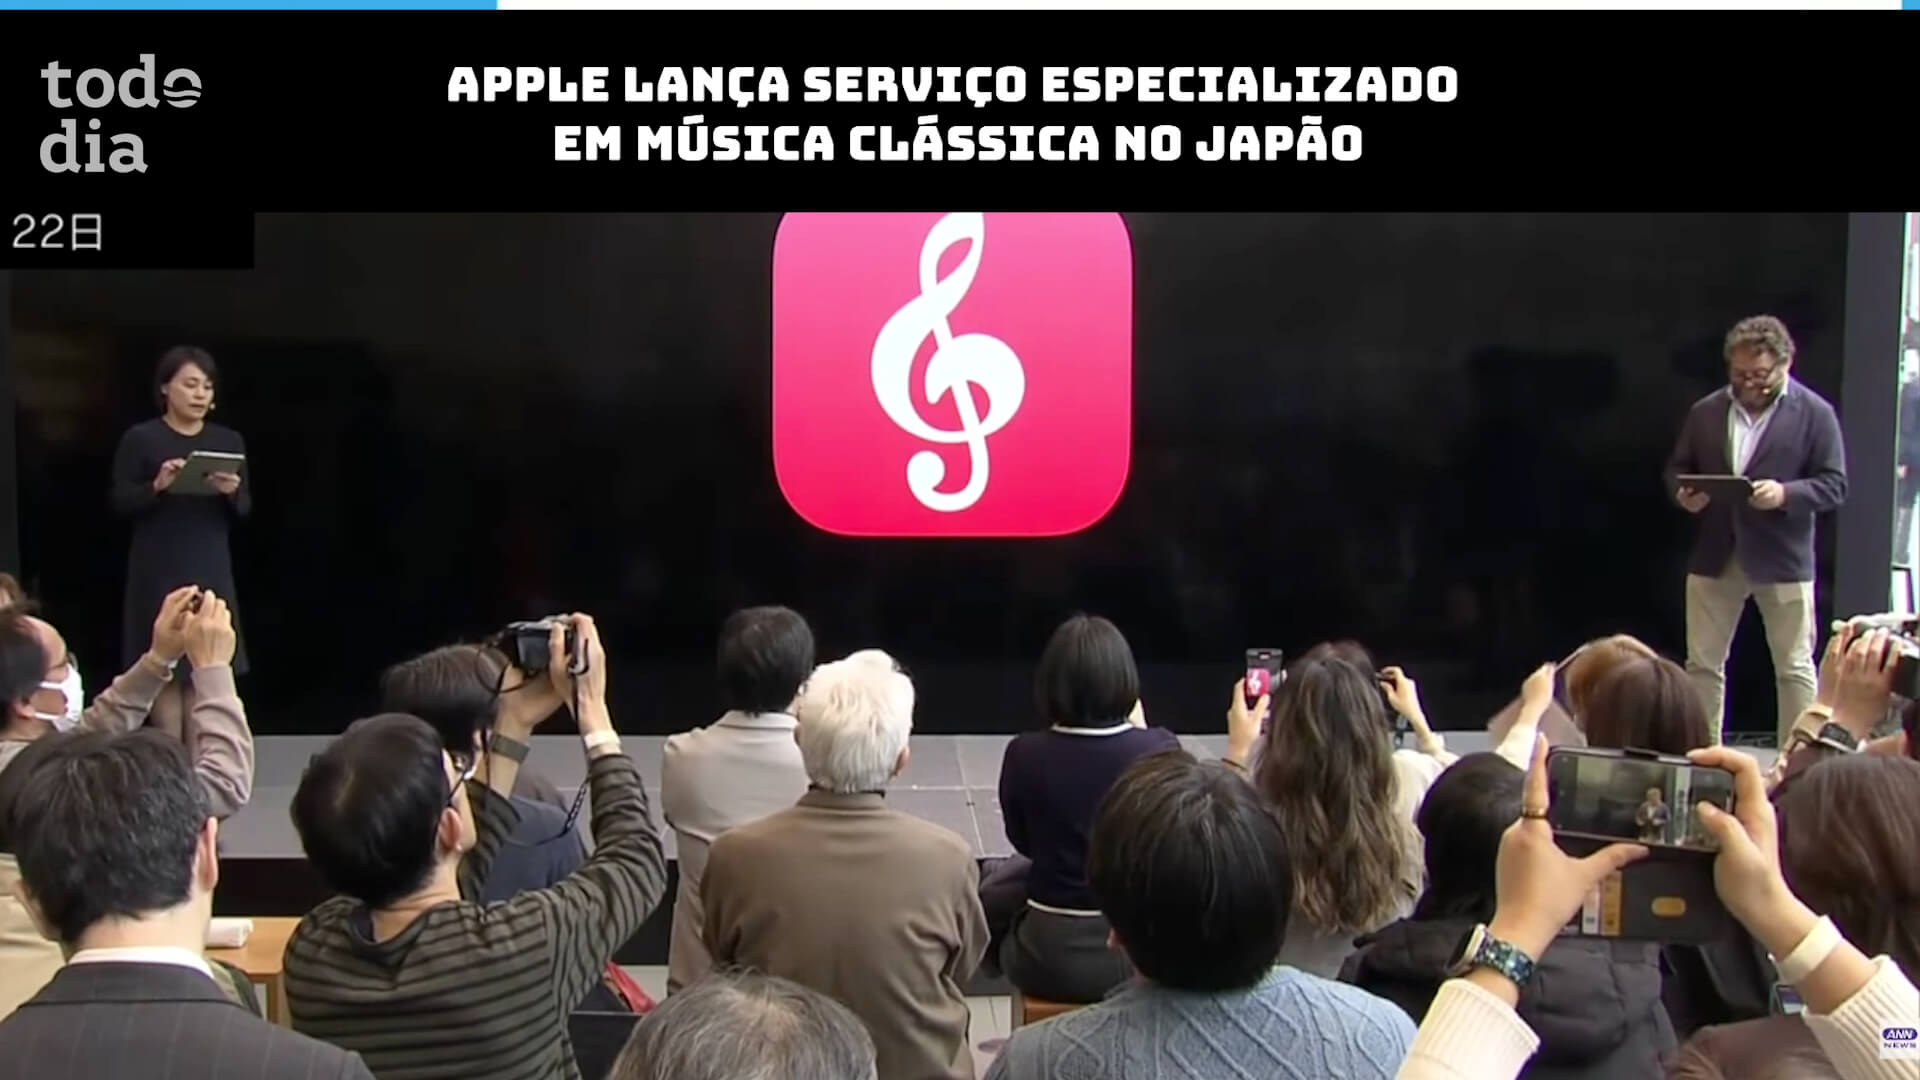 Apple lança serviço especializado em música clássica no Japão